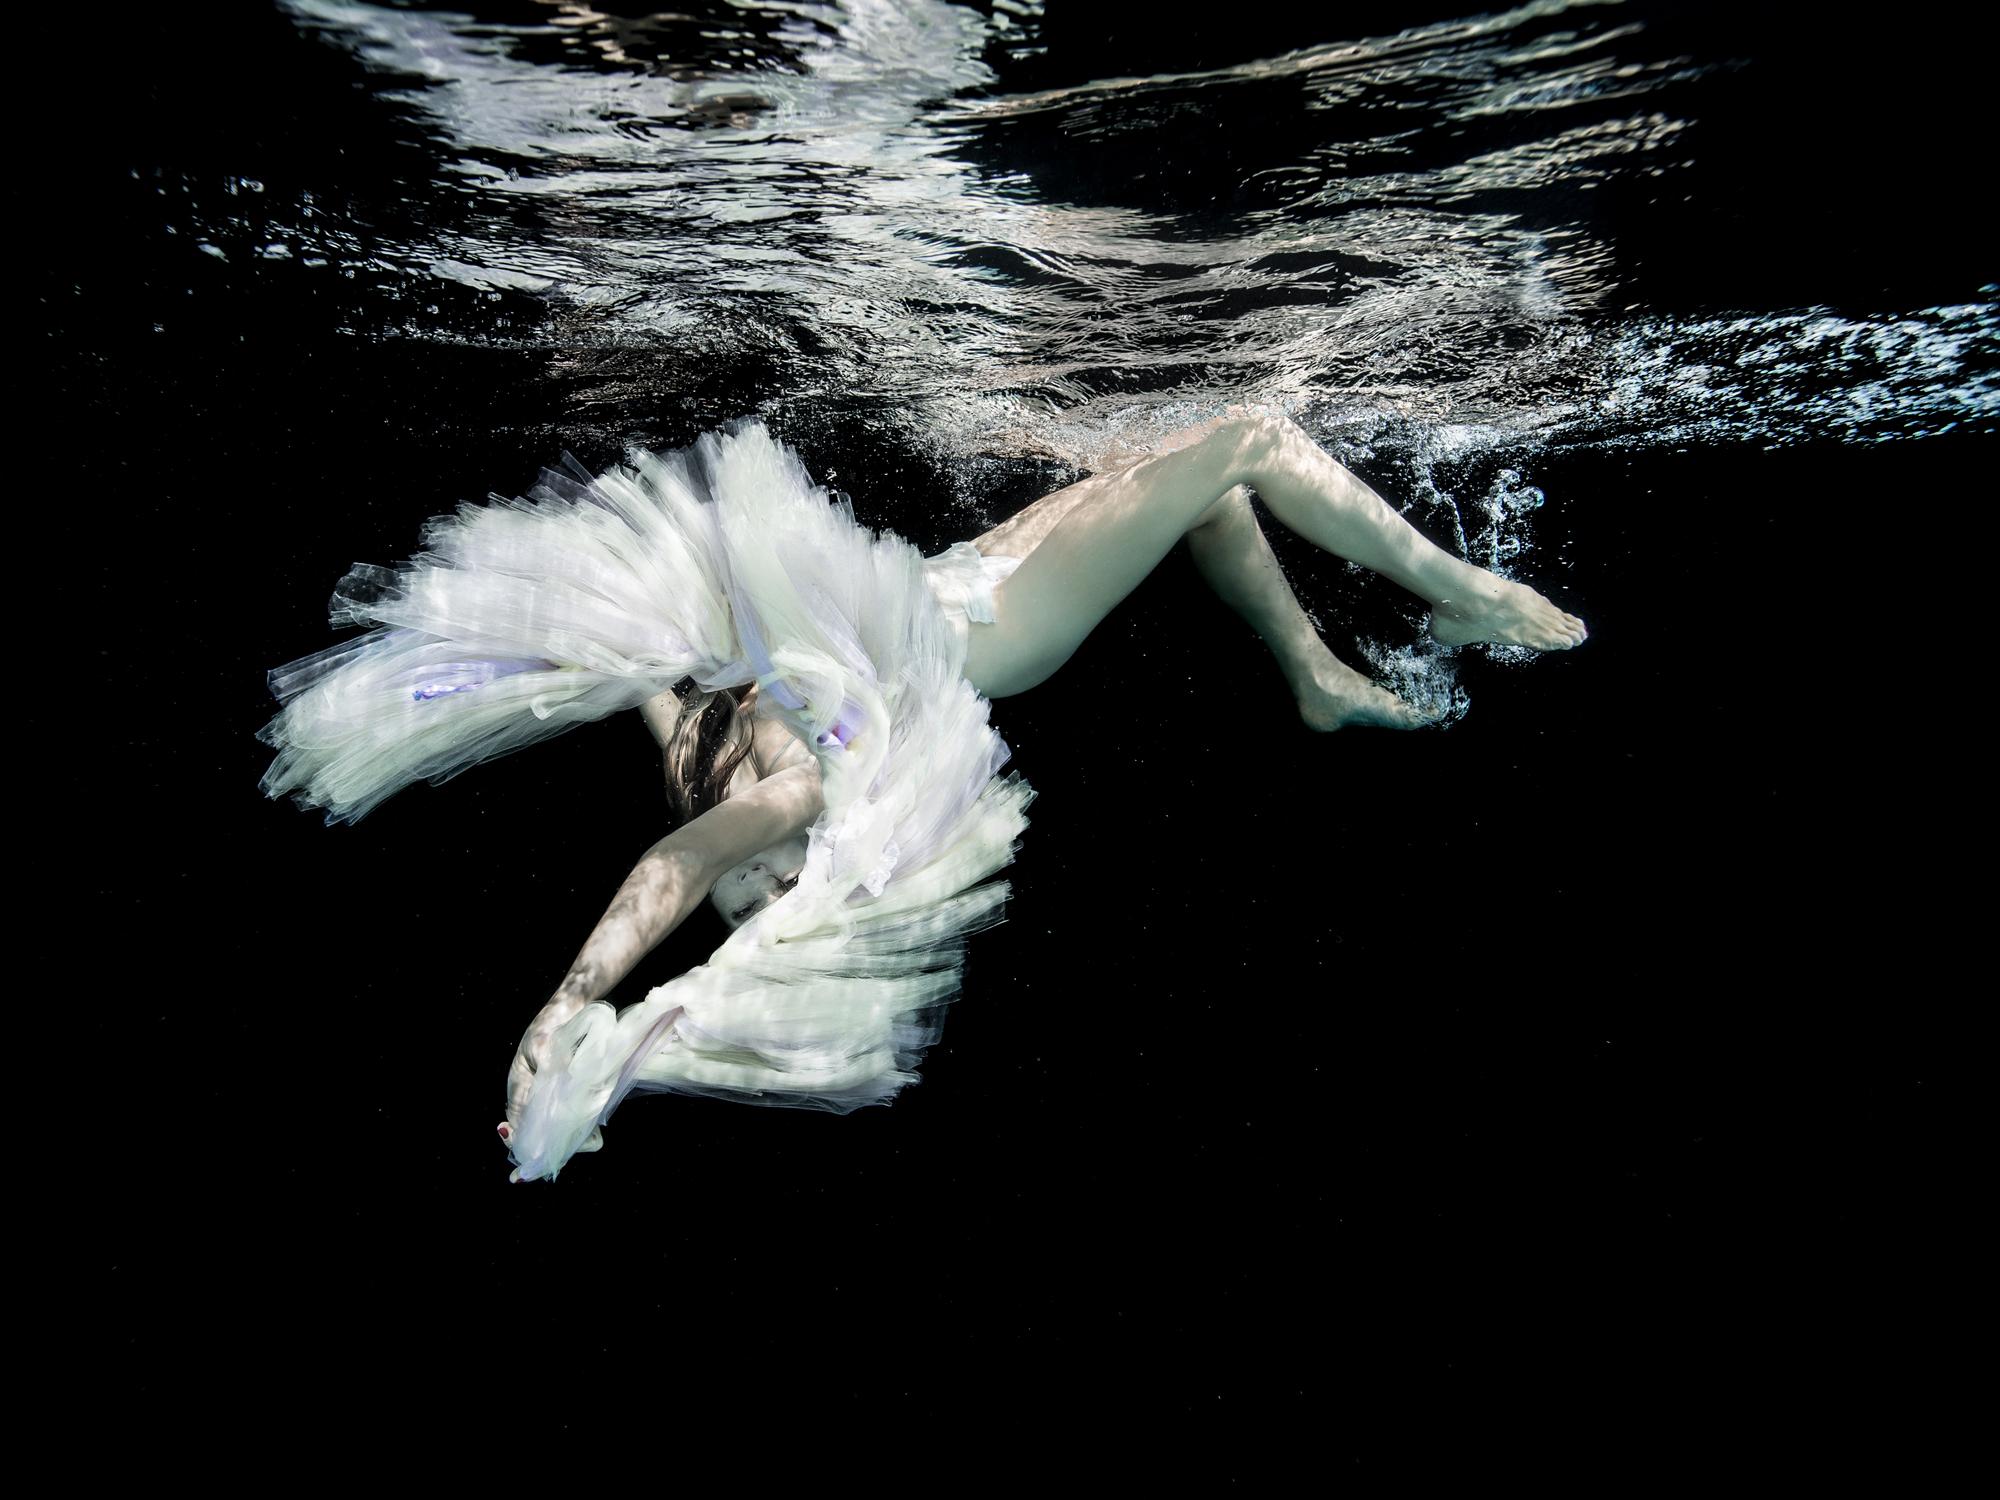 Nude Photograph Alex Sher - Ballet - photographie de nu sous-marine en noir et blanc - pigment d'archives 27" x 35"